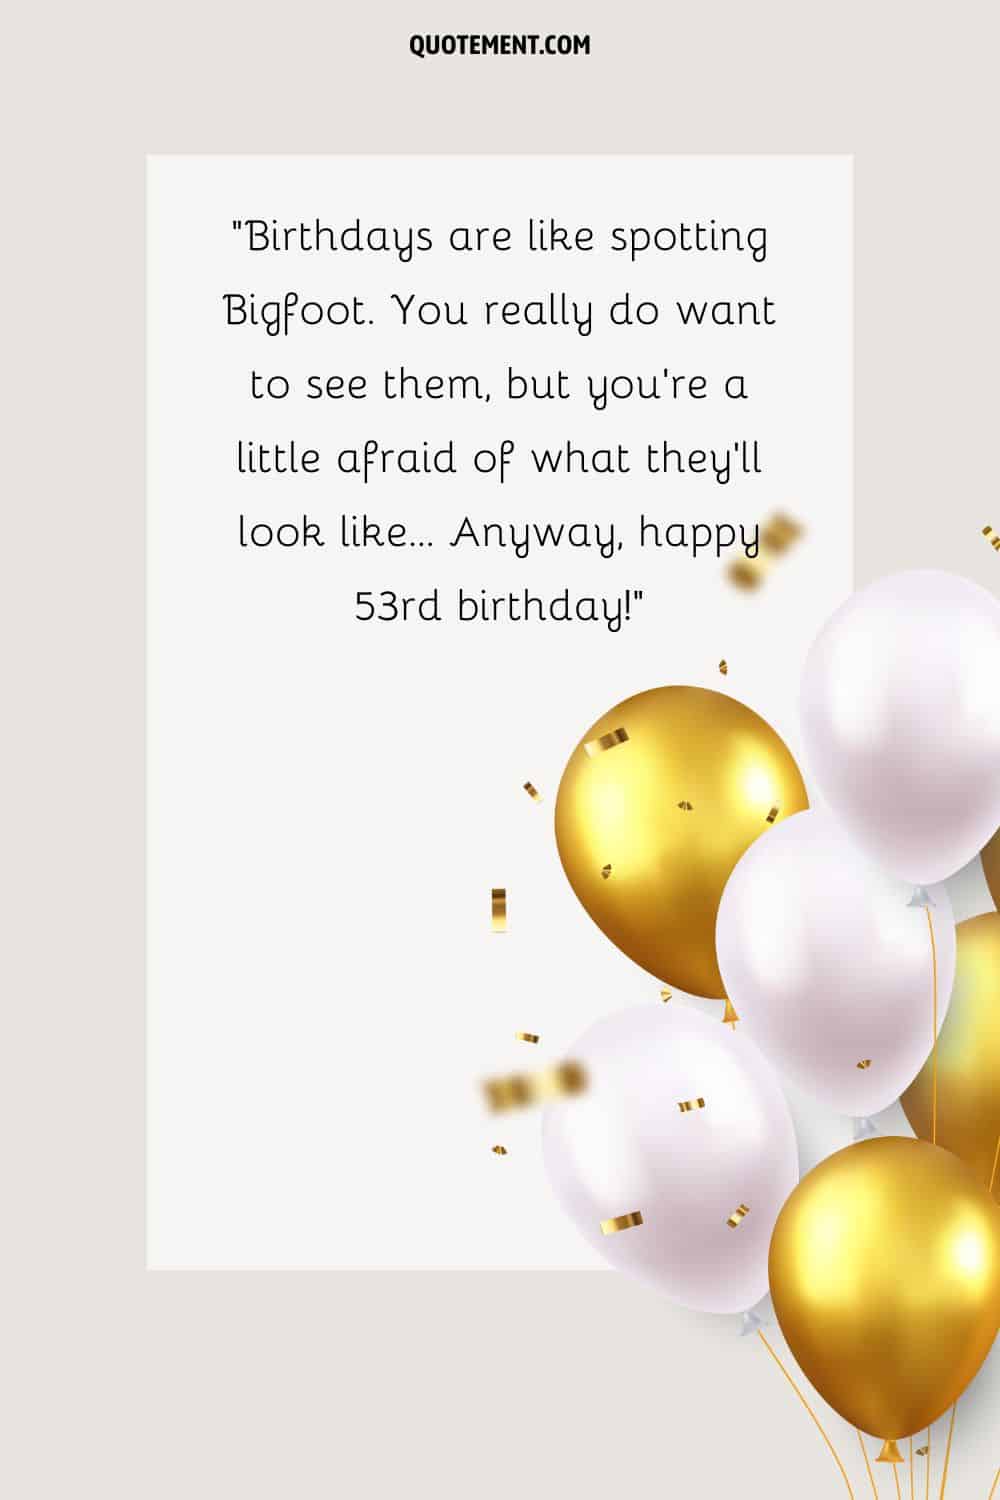 Mensaje hilarante para su 53 cumpleaños, globos blancos y dorados y confeti